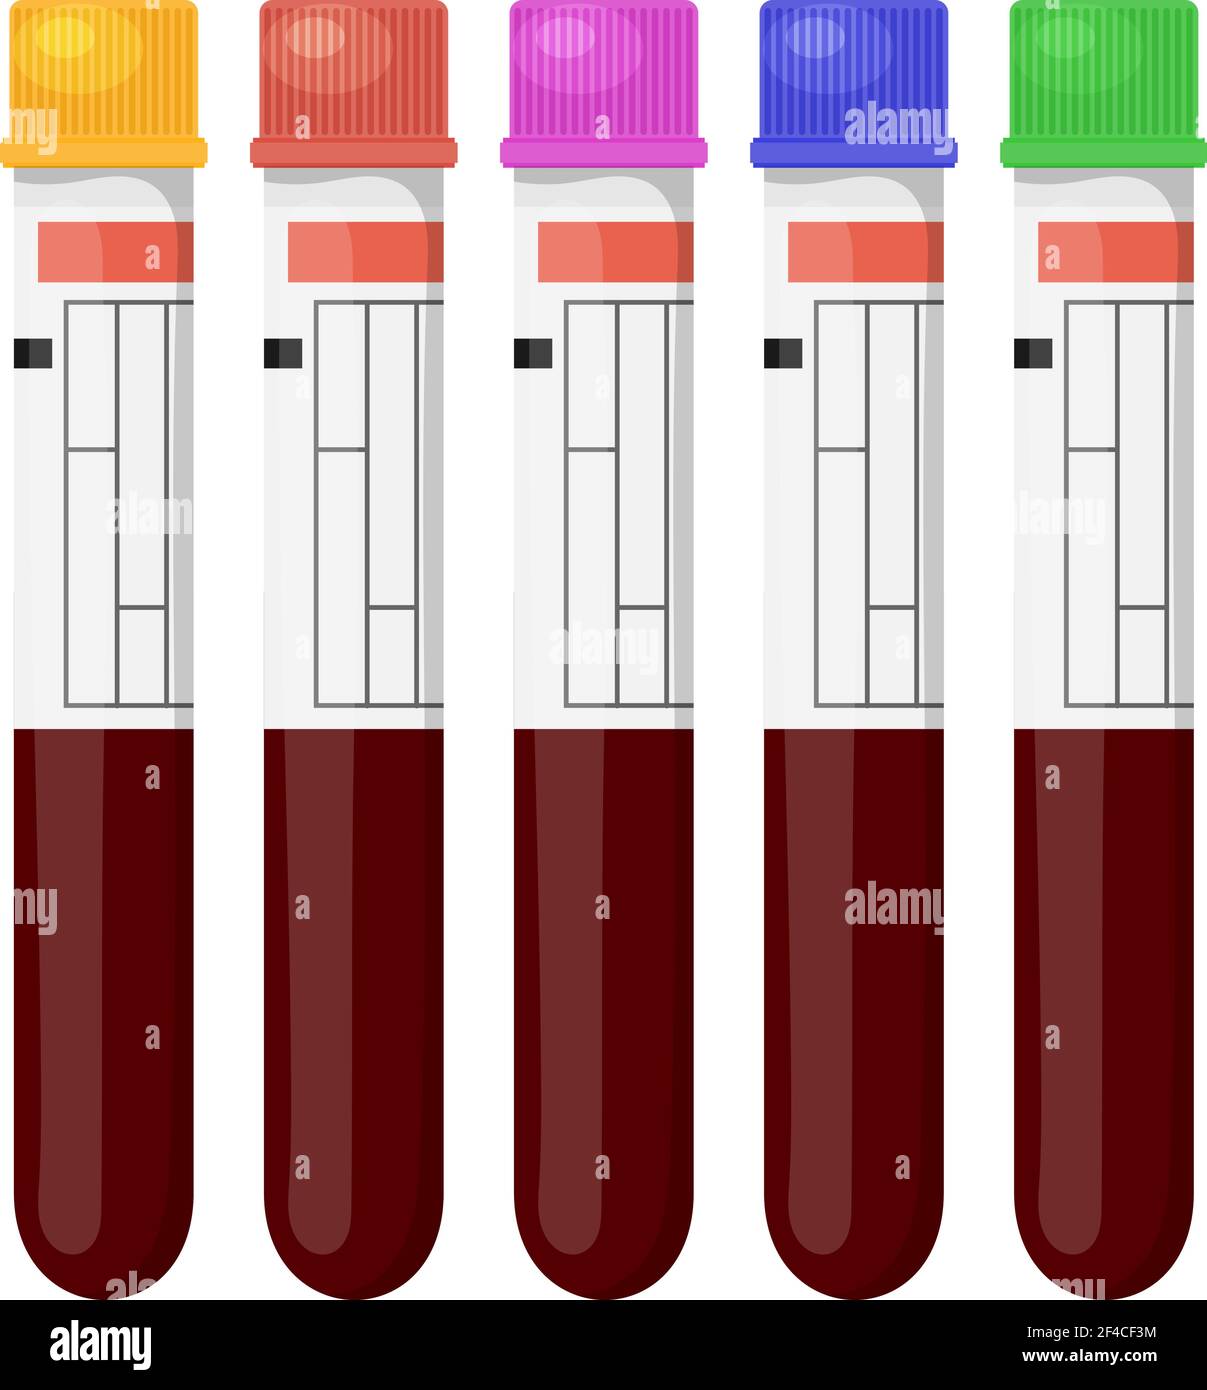 Satz von Vektorgrafiken von medizinischen Reagenzgläsern mit farbigen Kappen für einen Bluttest auf weißem Hintergrund. Medizinische Reagenzgläser, isolieren. Blutuntersuchungen im Labor unterzogen. Cartoon-Stil. Stock Vektor